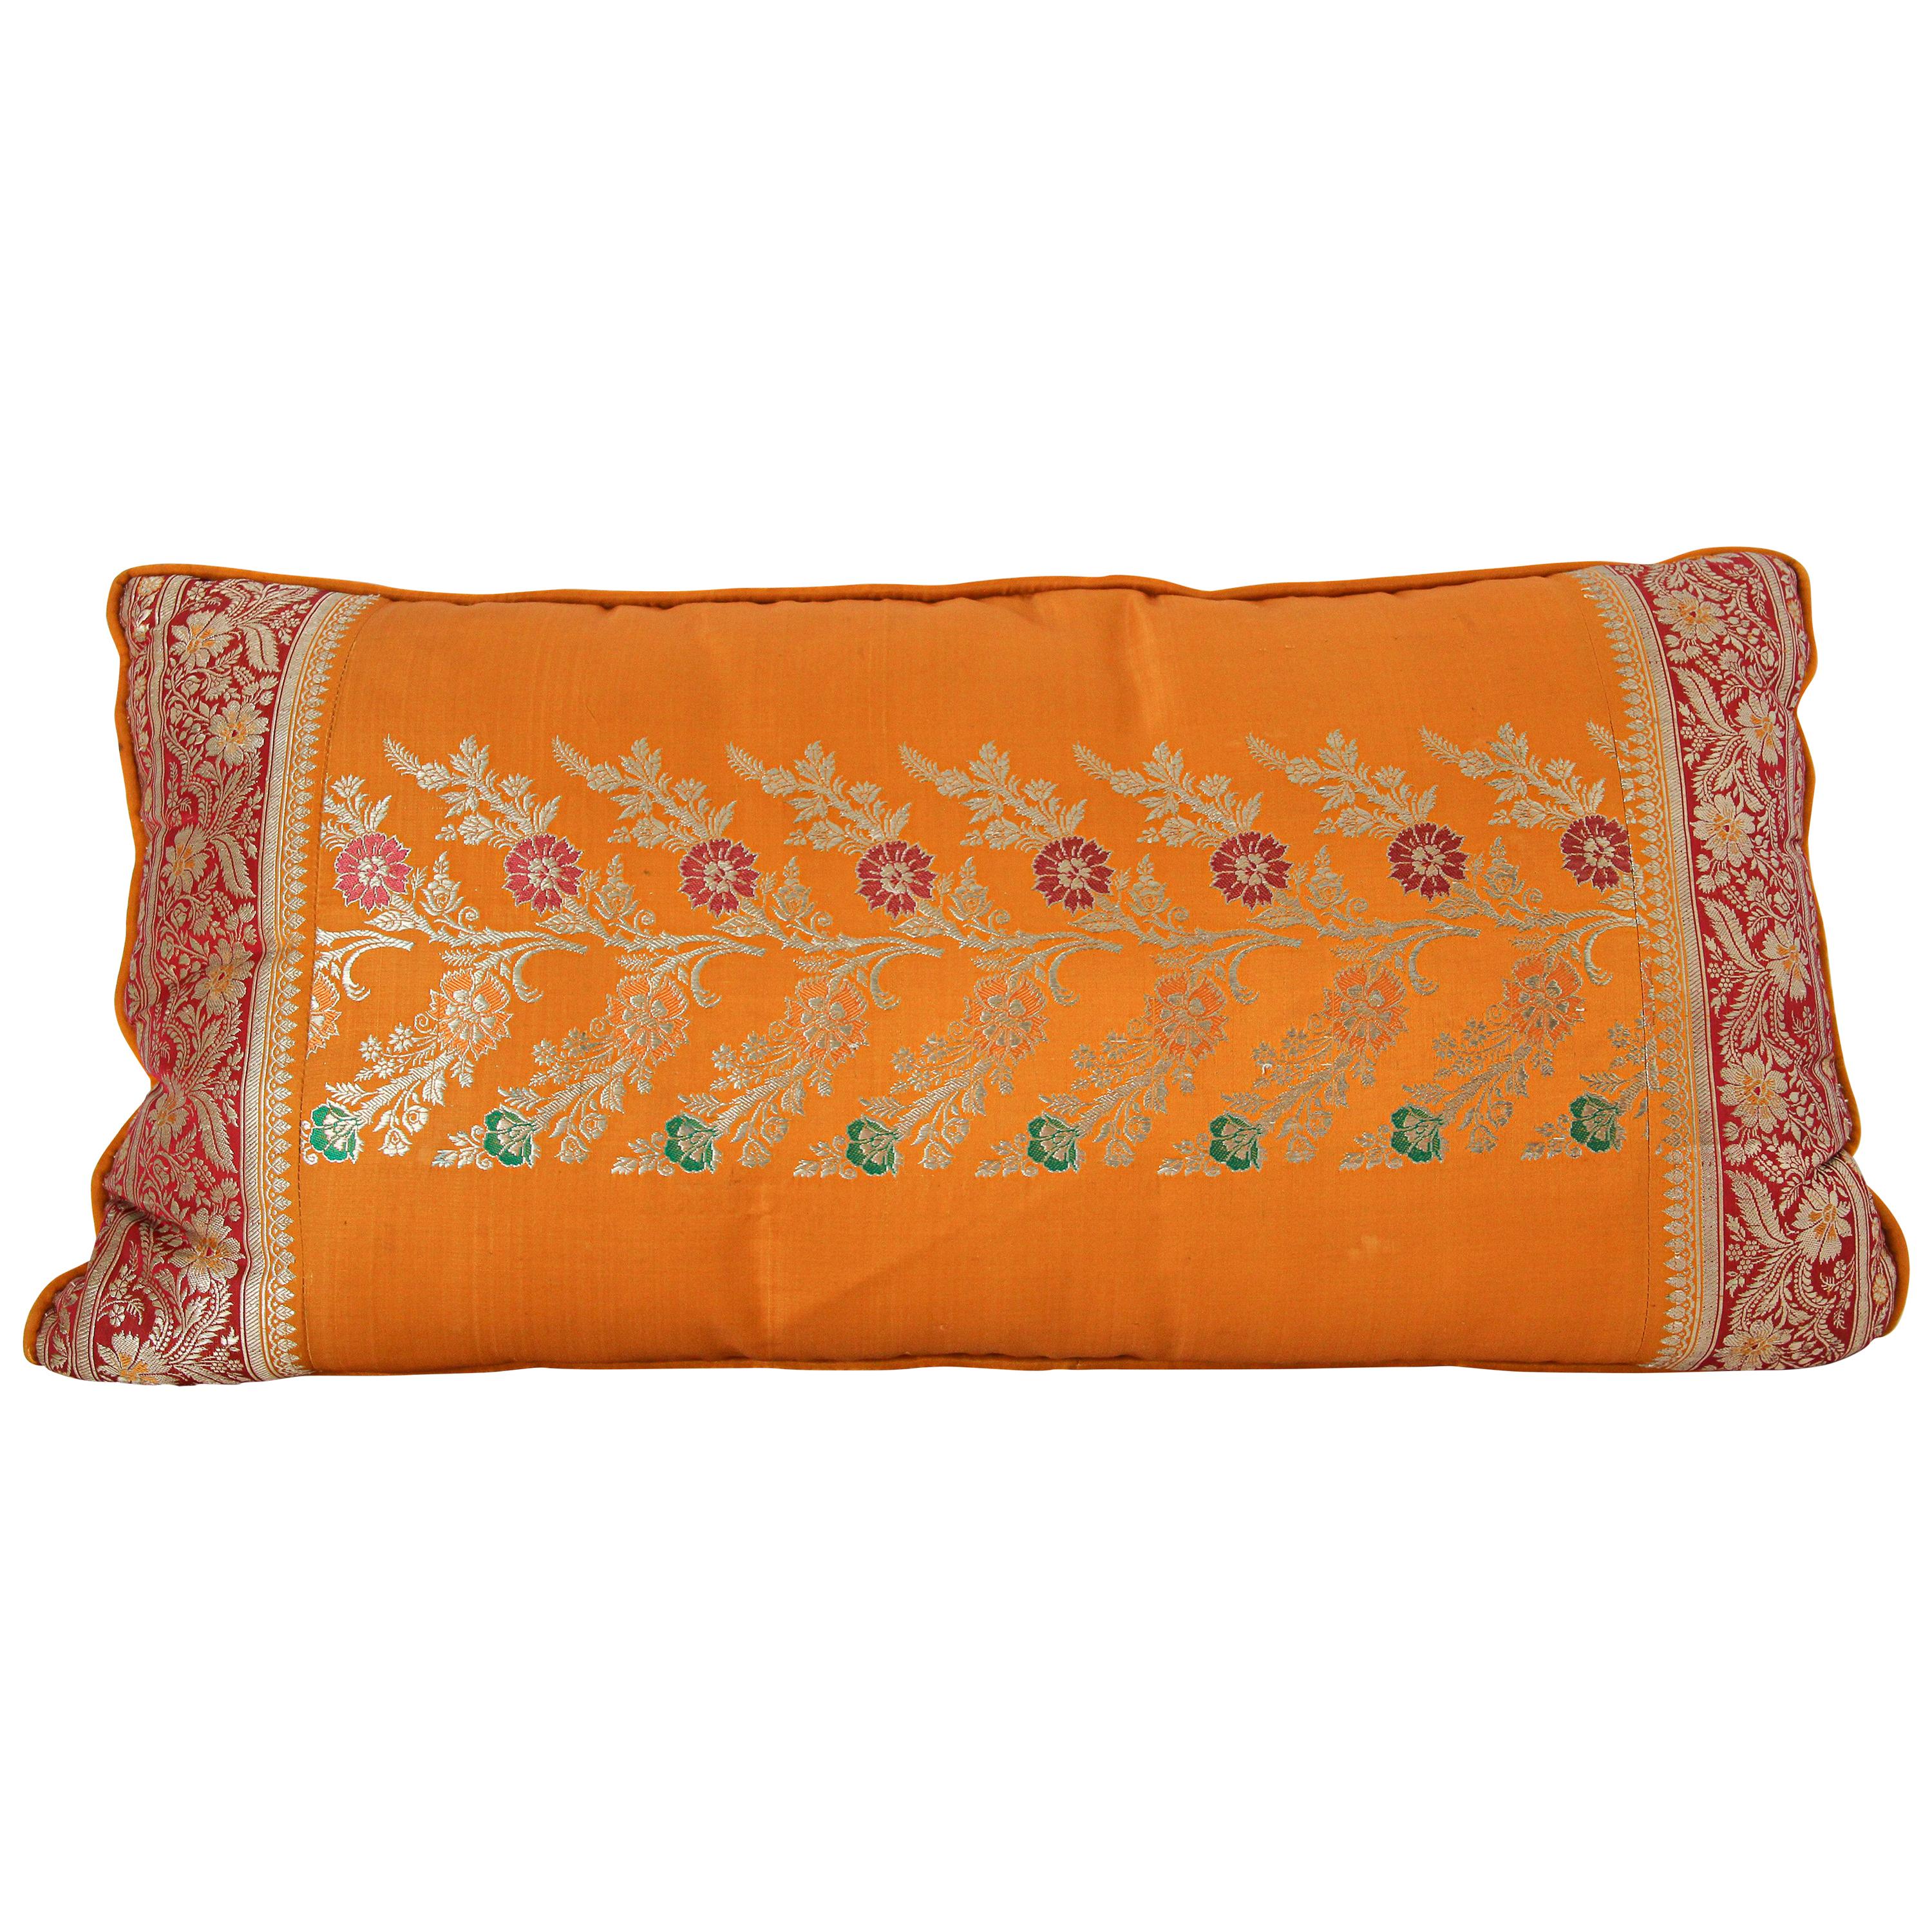 Seidenkissen, maßgefertigt aus einer Hochzeit Orange Sari, Indien